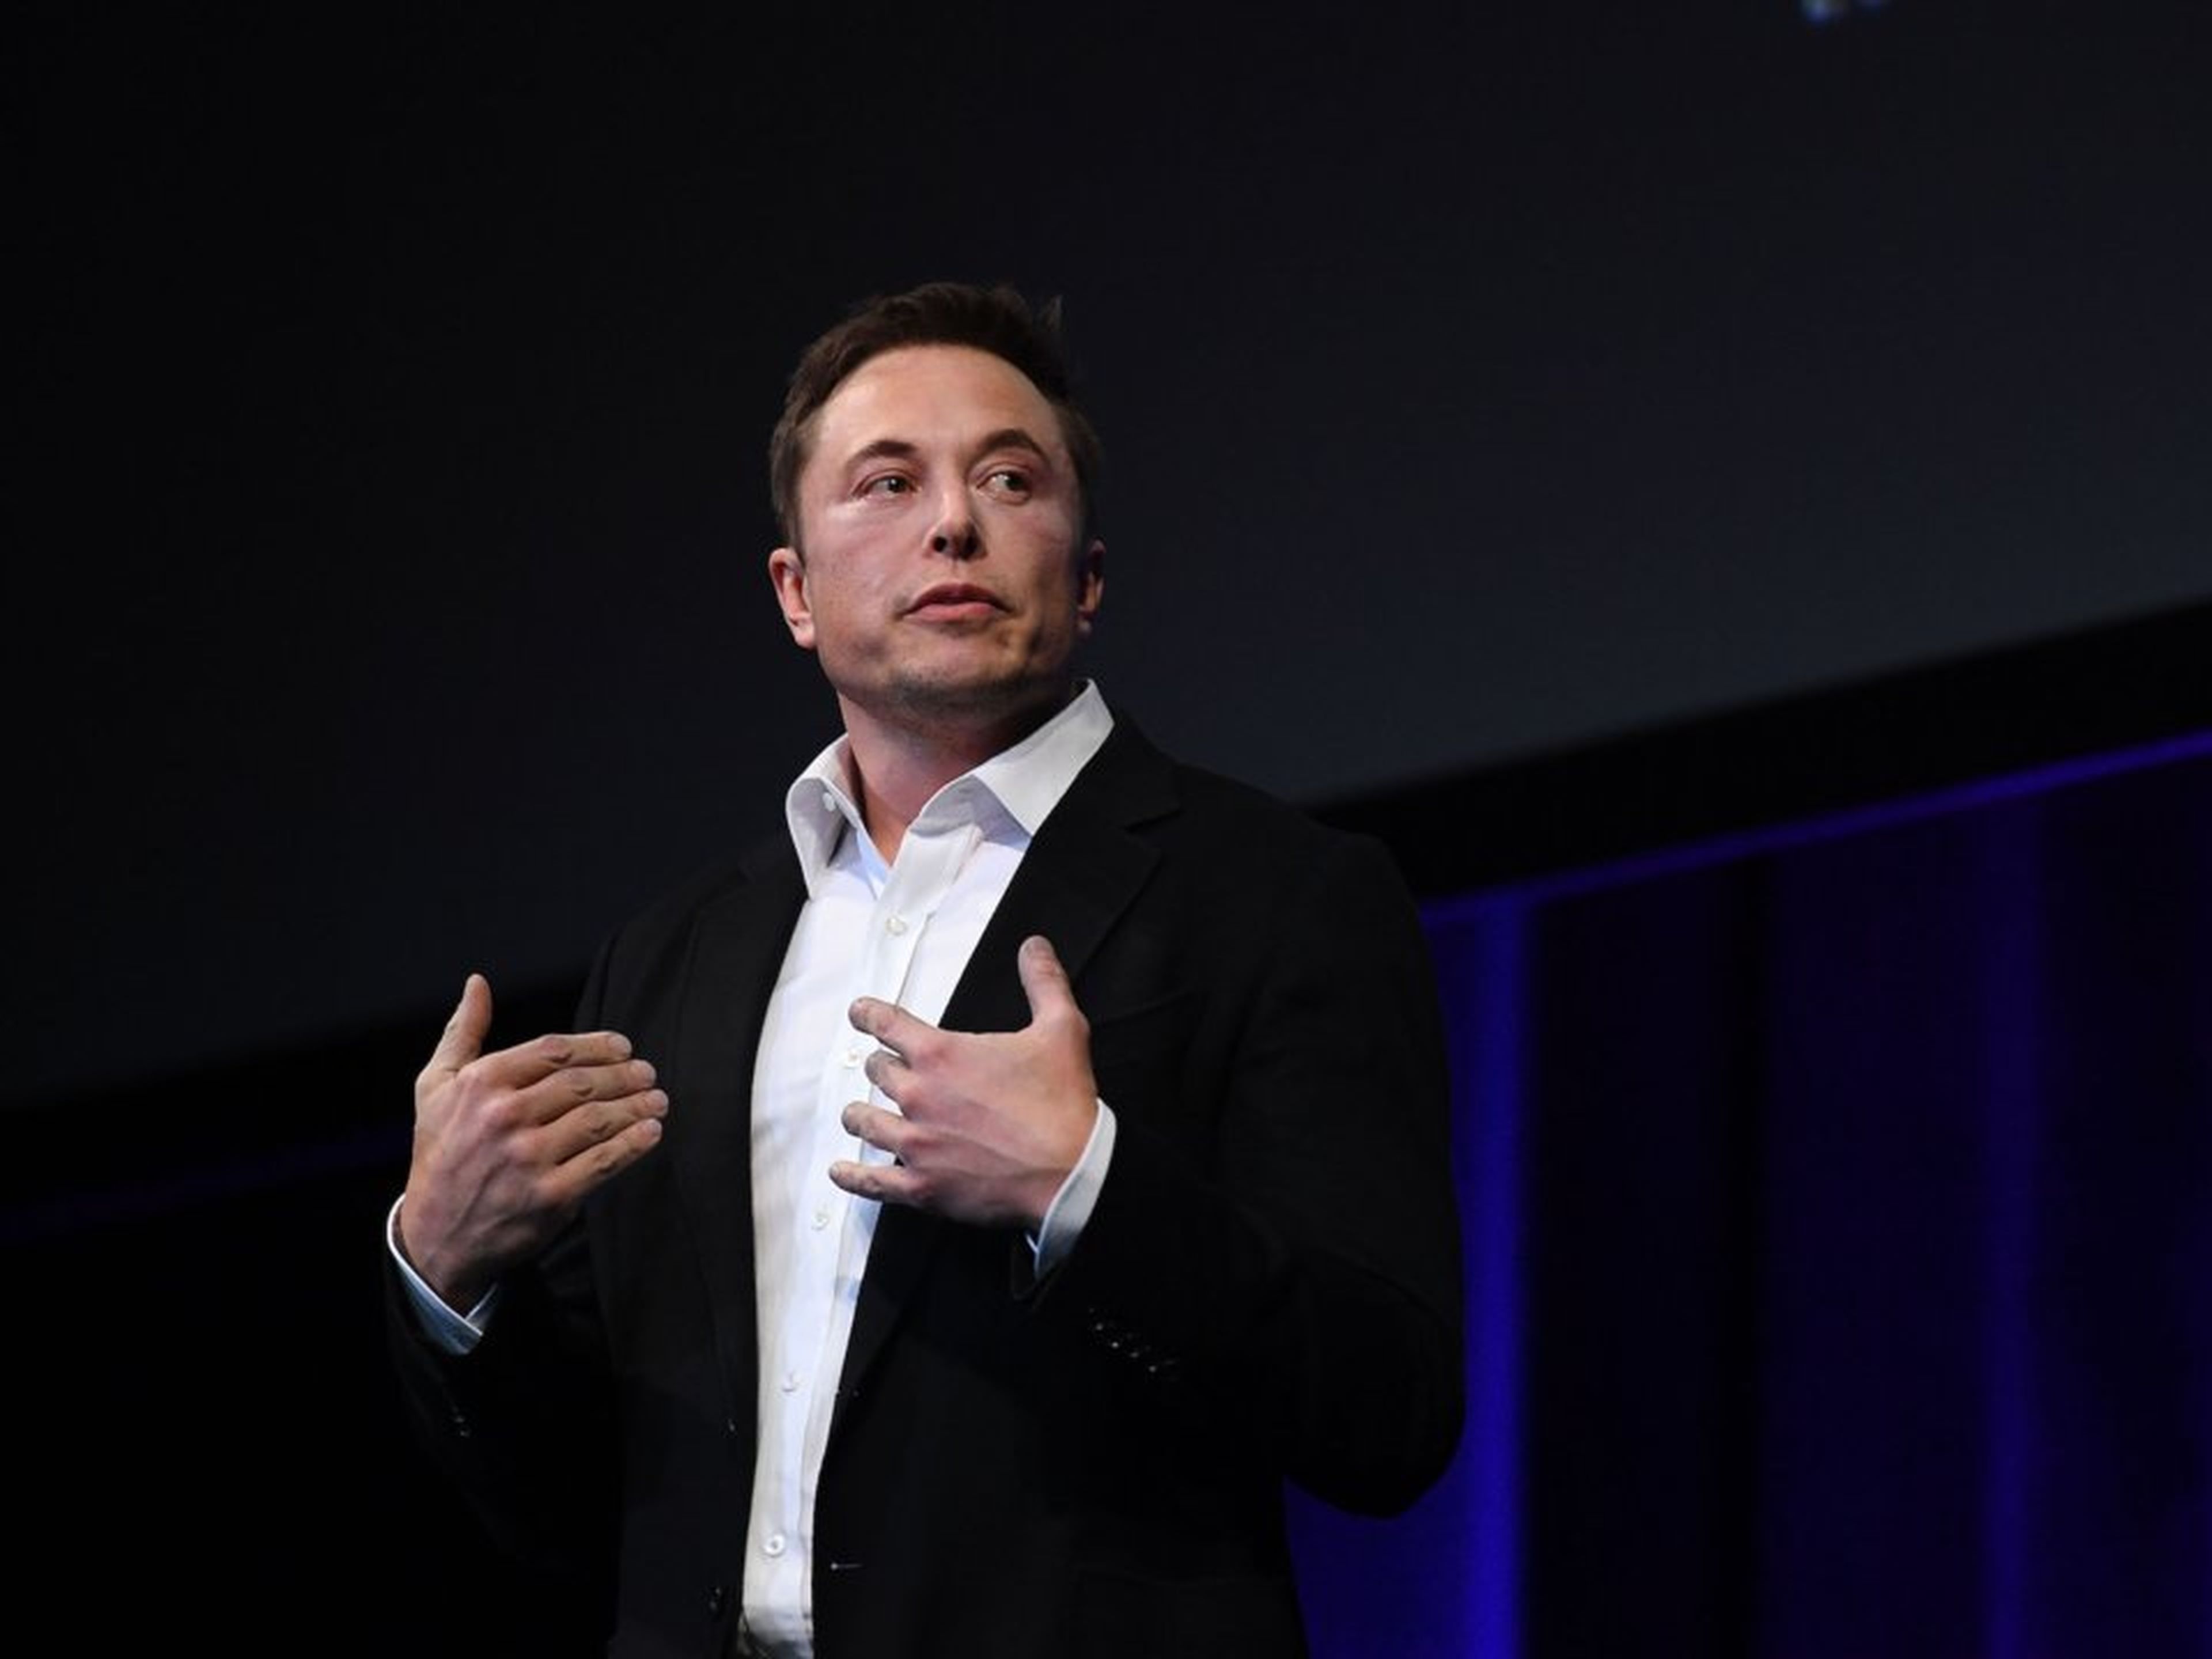 Tesla estuvo cerca de la quiebra antes de que Musk se convirtiera en CEO